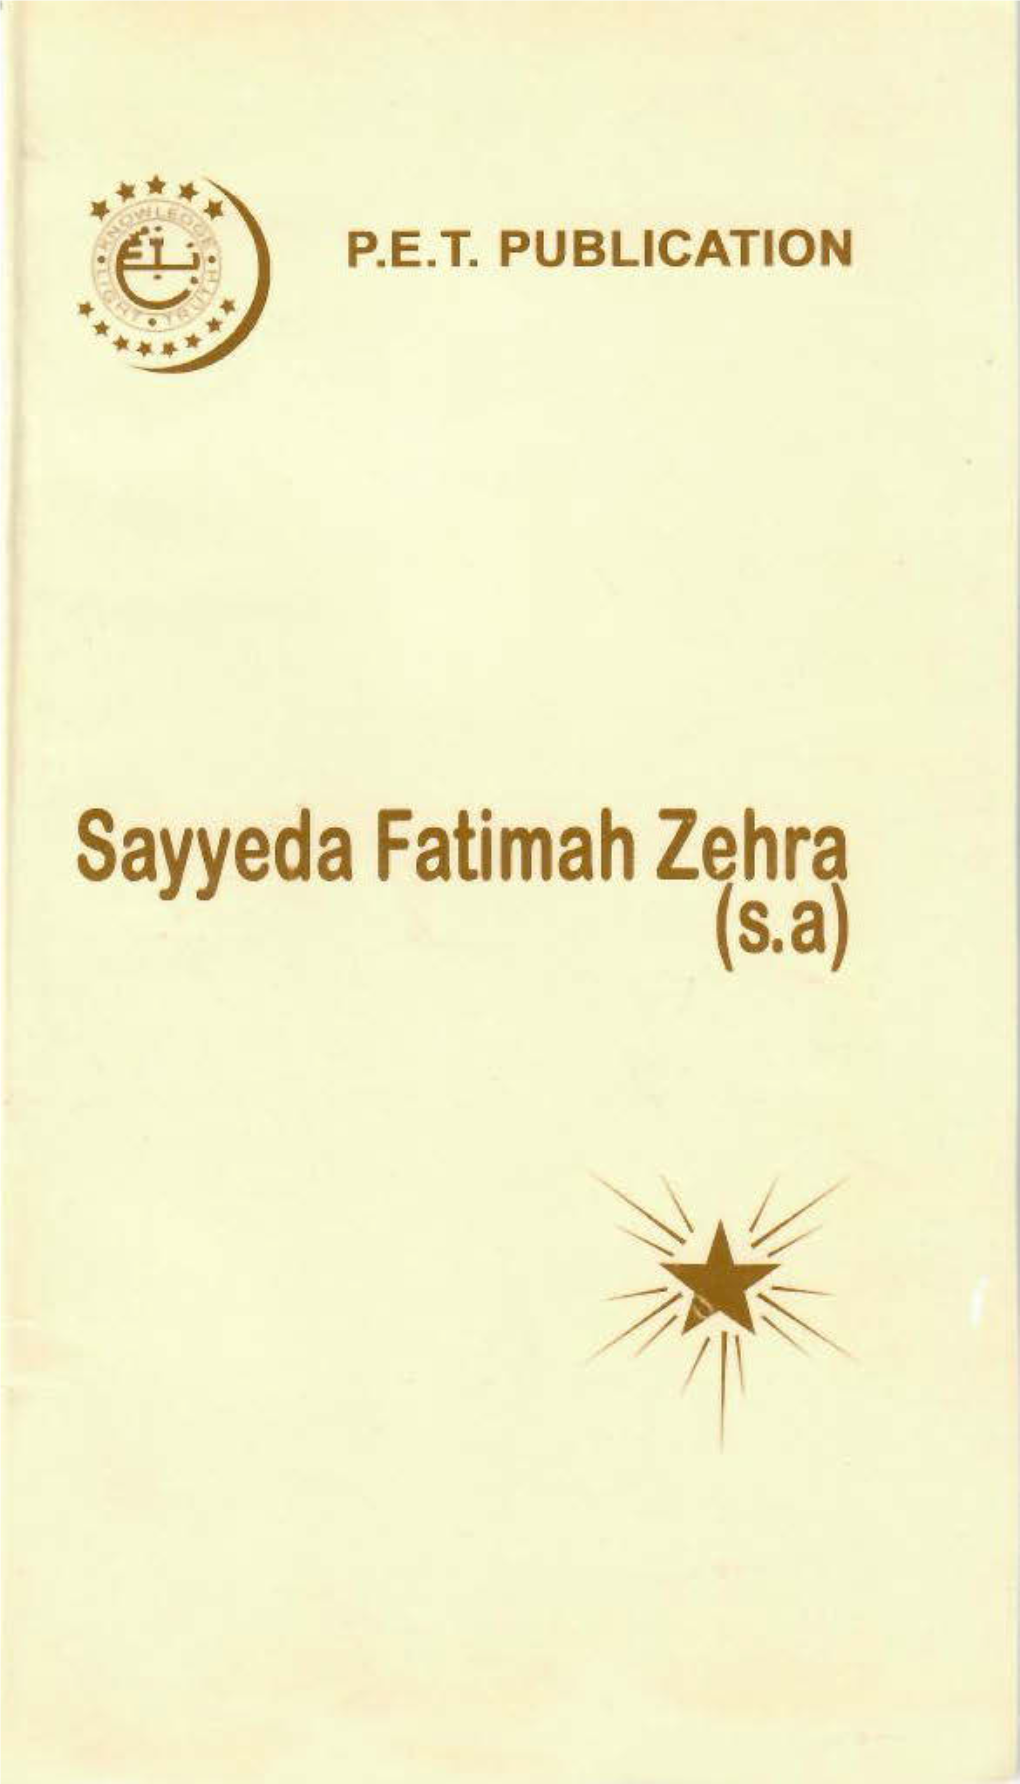 Sayyeda Fatimah Zahra (S.A.) COPYRIGHT 12014